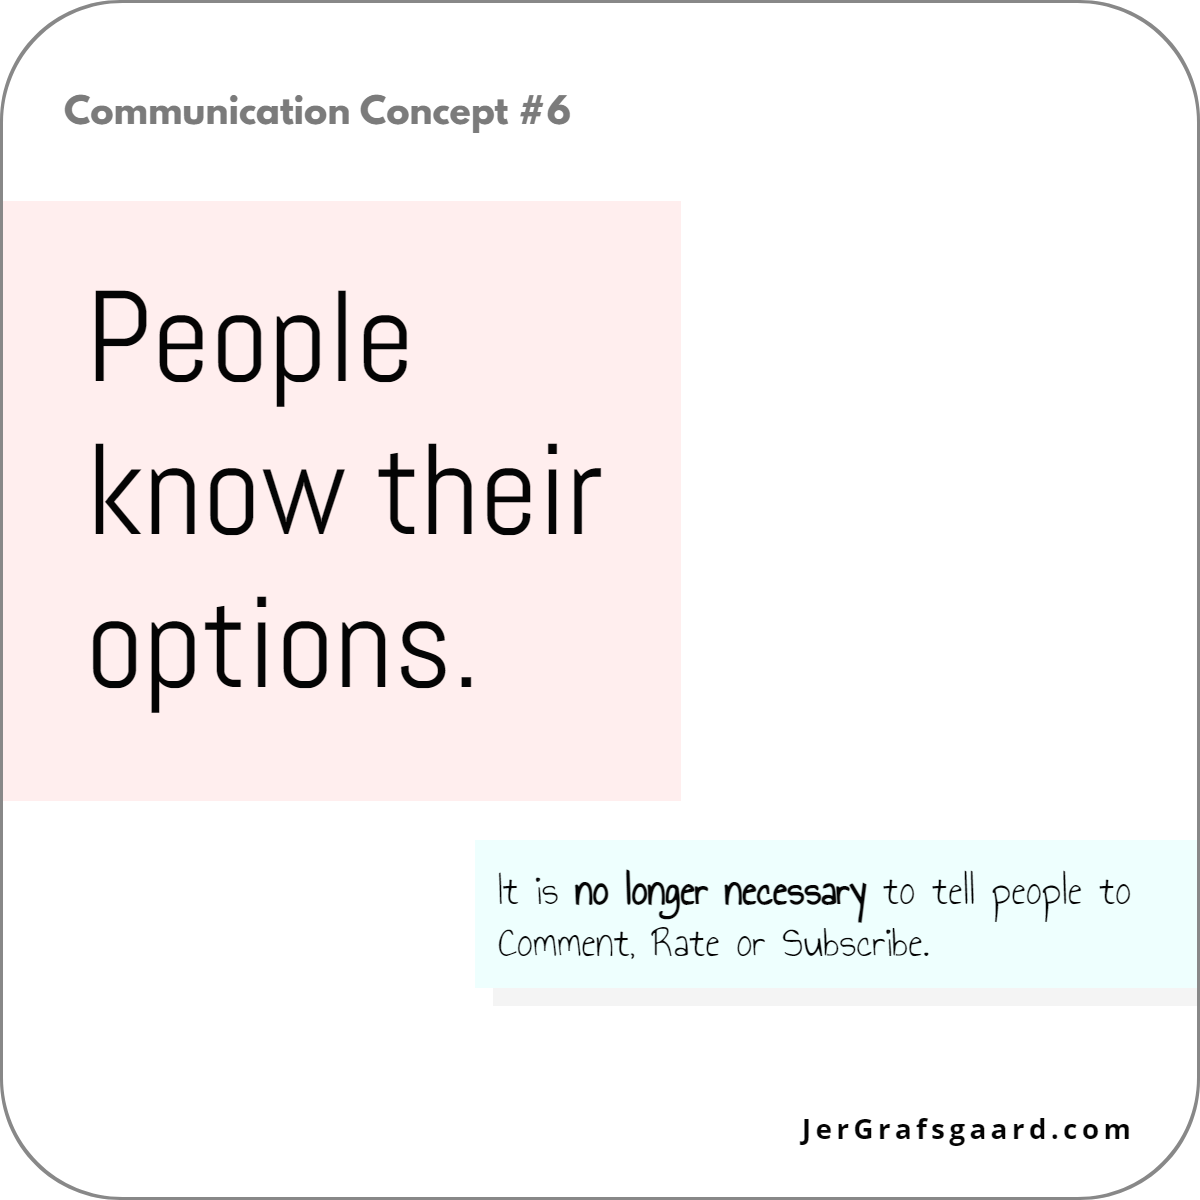 Communication Concept #6